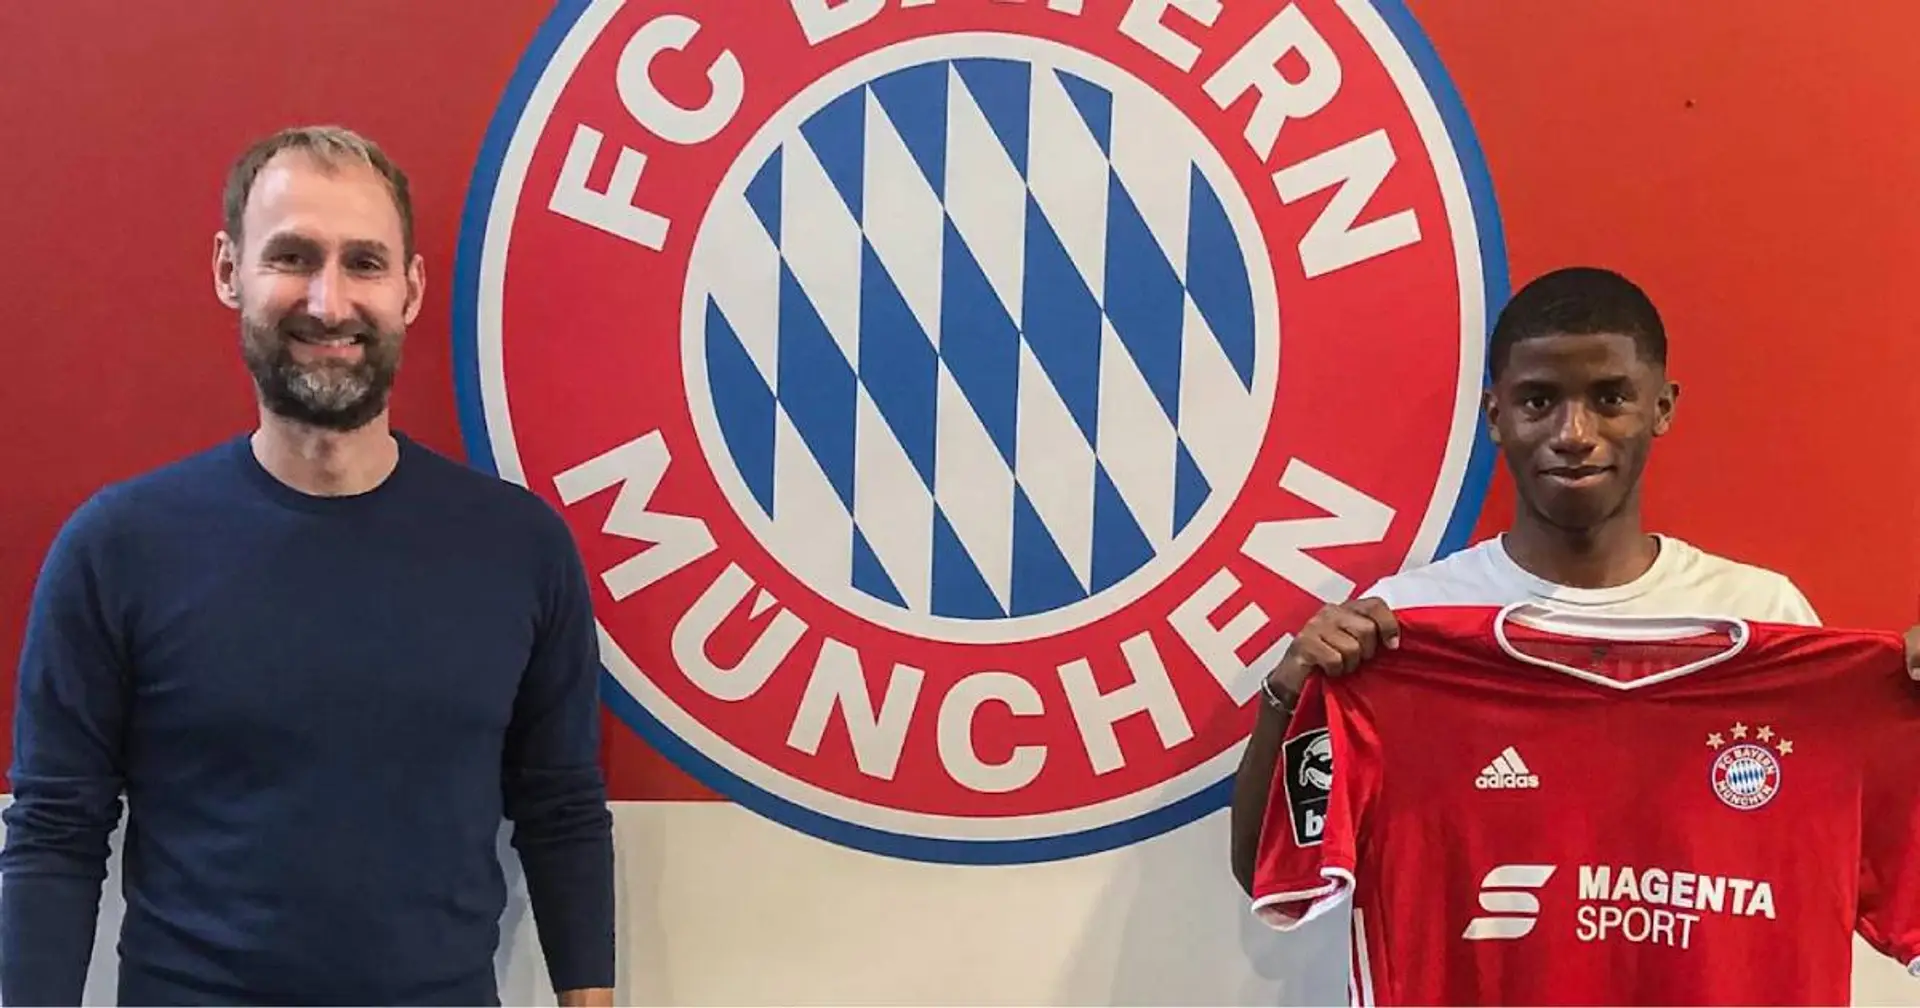 Remy Vita: Als ich über Bayern-Interesse gehört habe, dachte ich an einen Witz